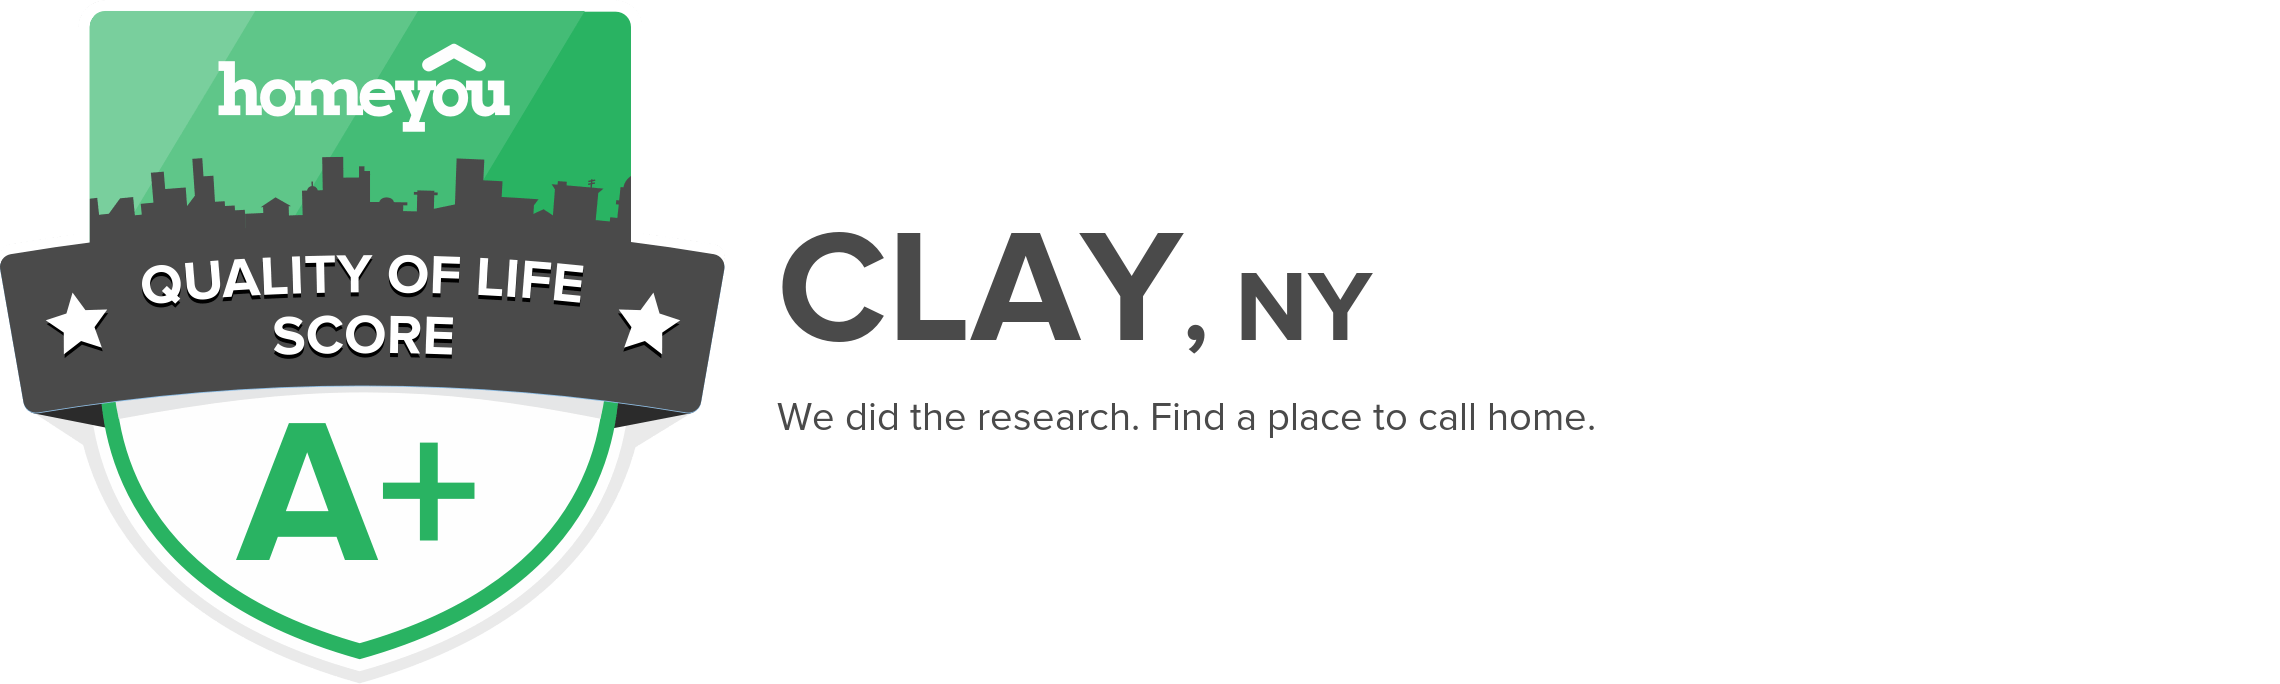 Clay, NY